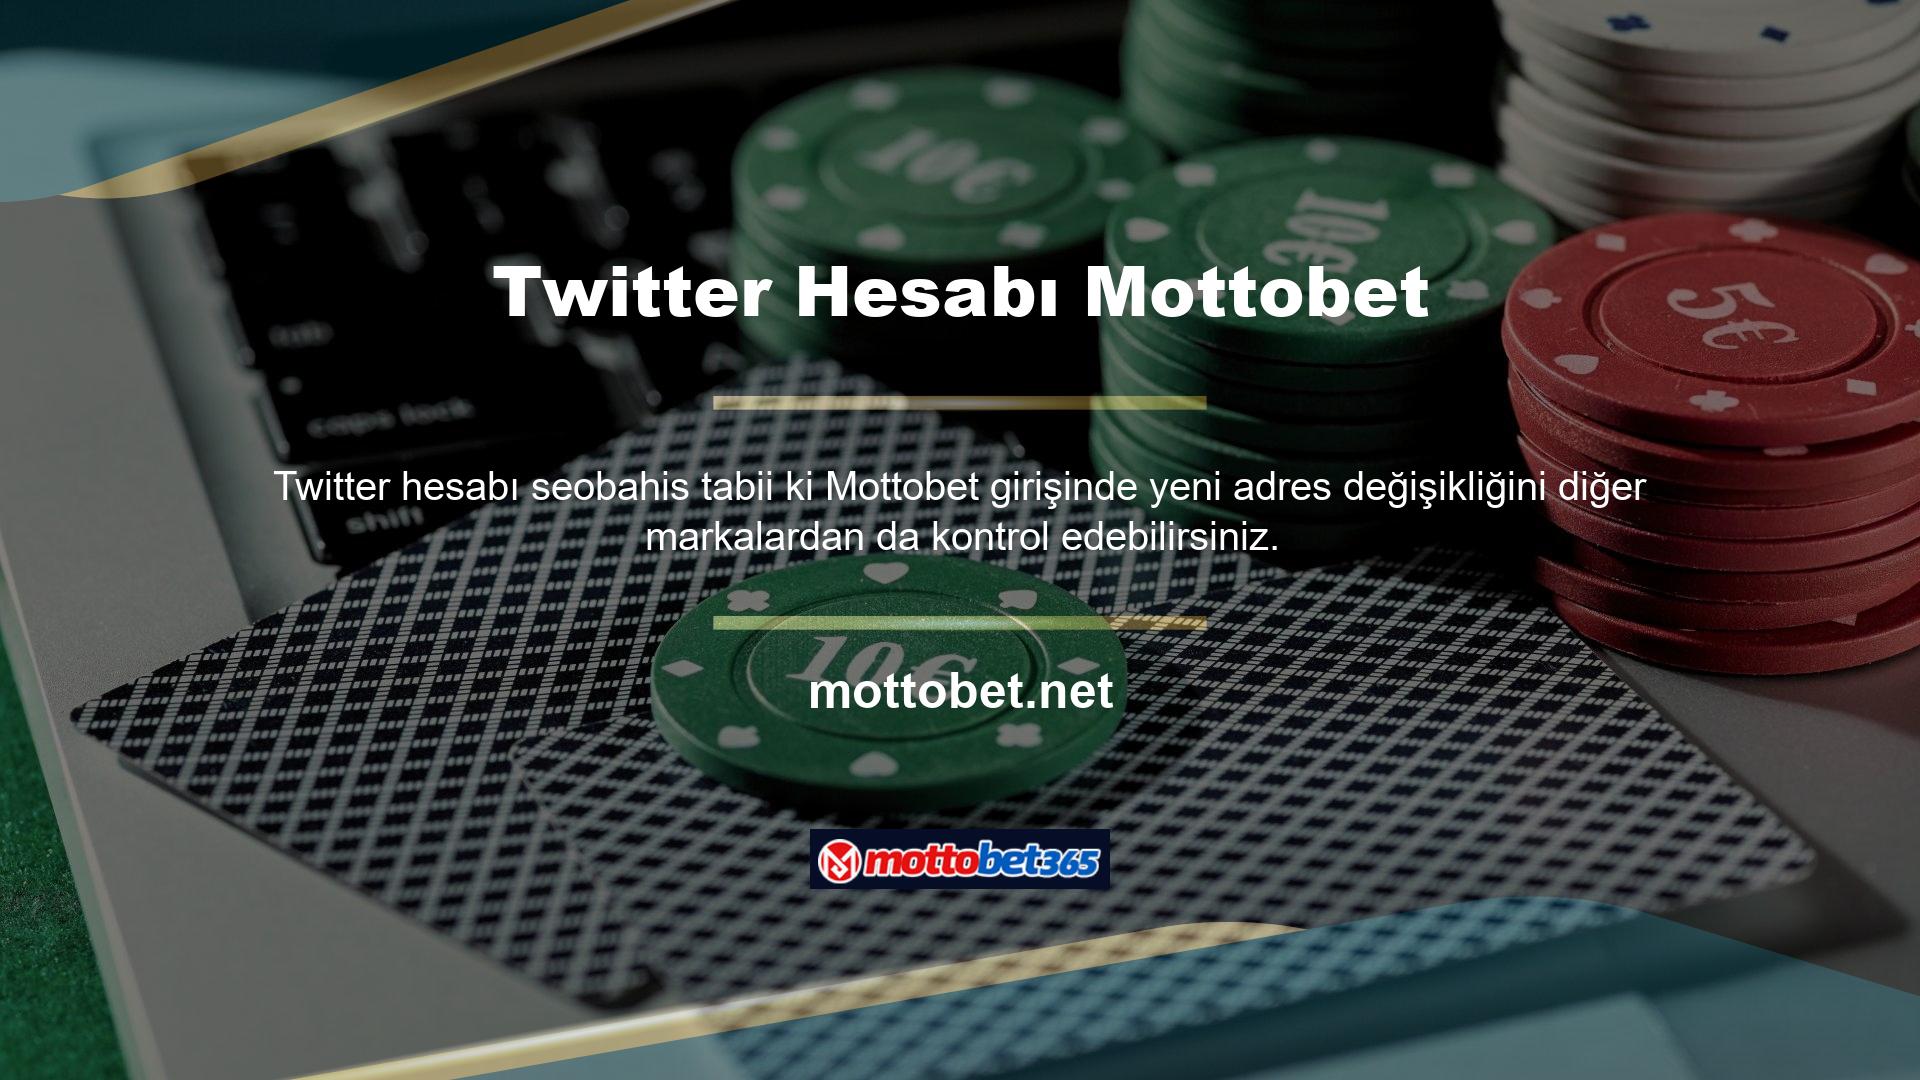 Önerilen alternatif Twitter hesabı Mottobet Twitter hesabıdır